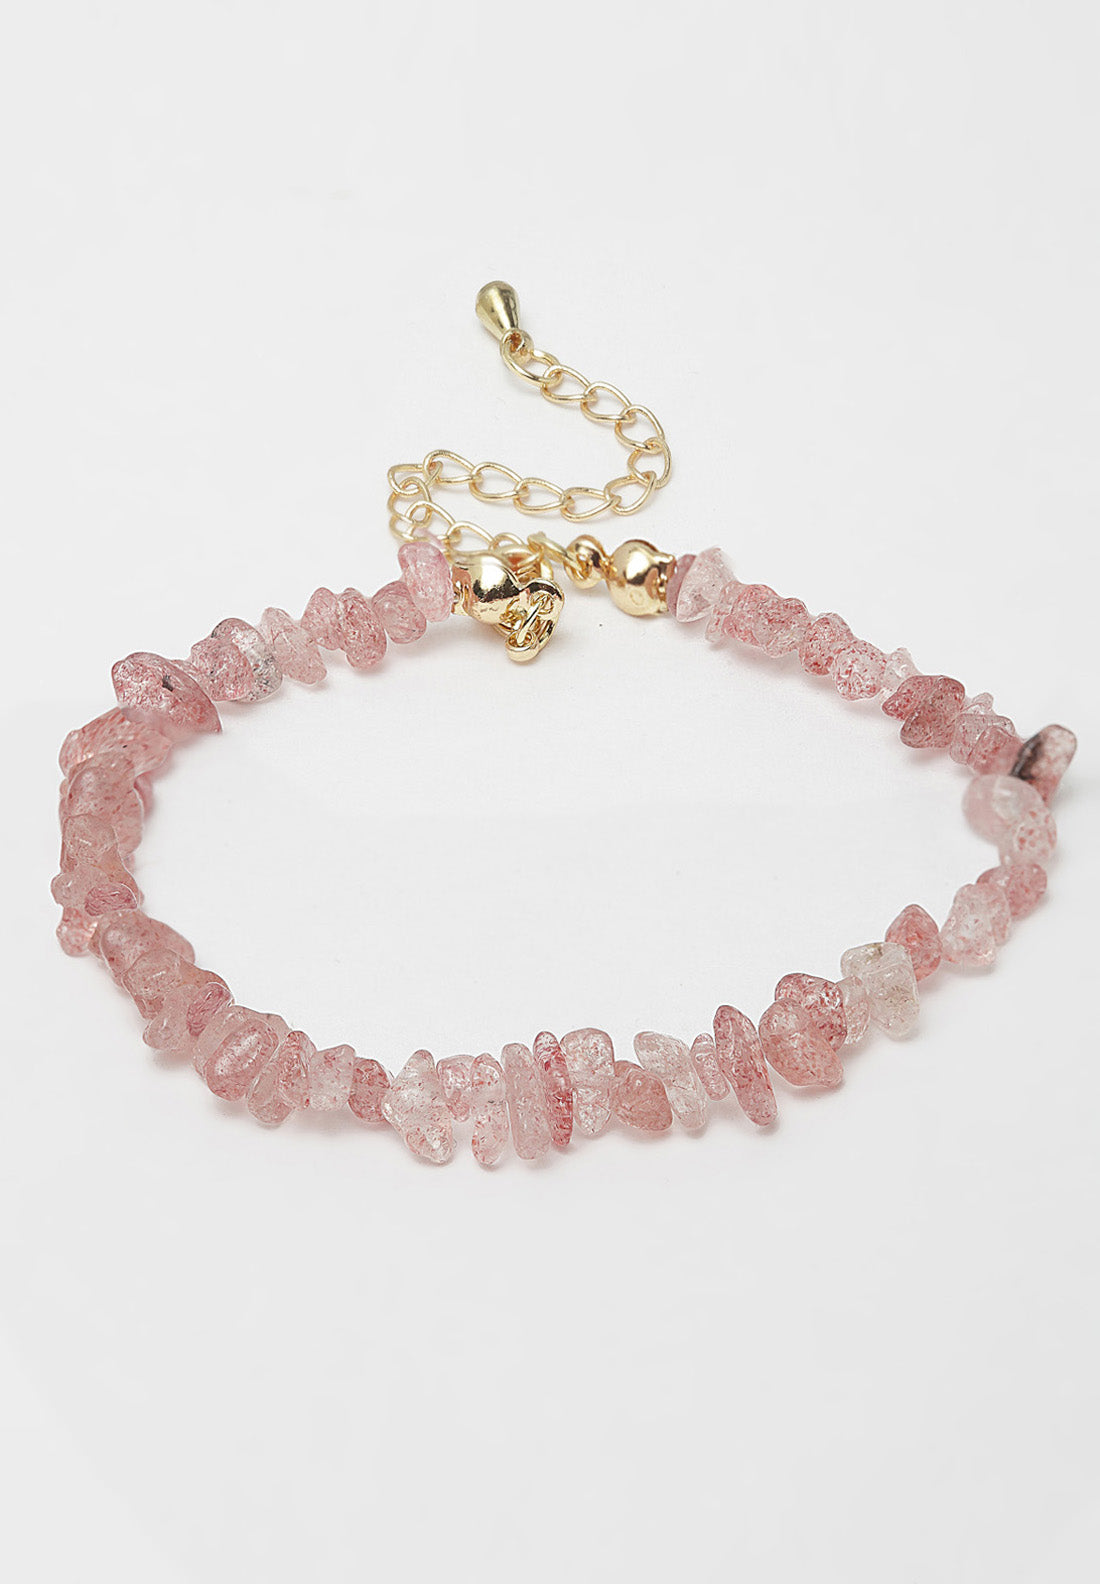 Avantgardistisches Paris-Armband mit rosa Steinen